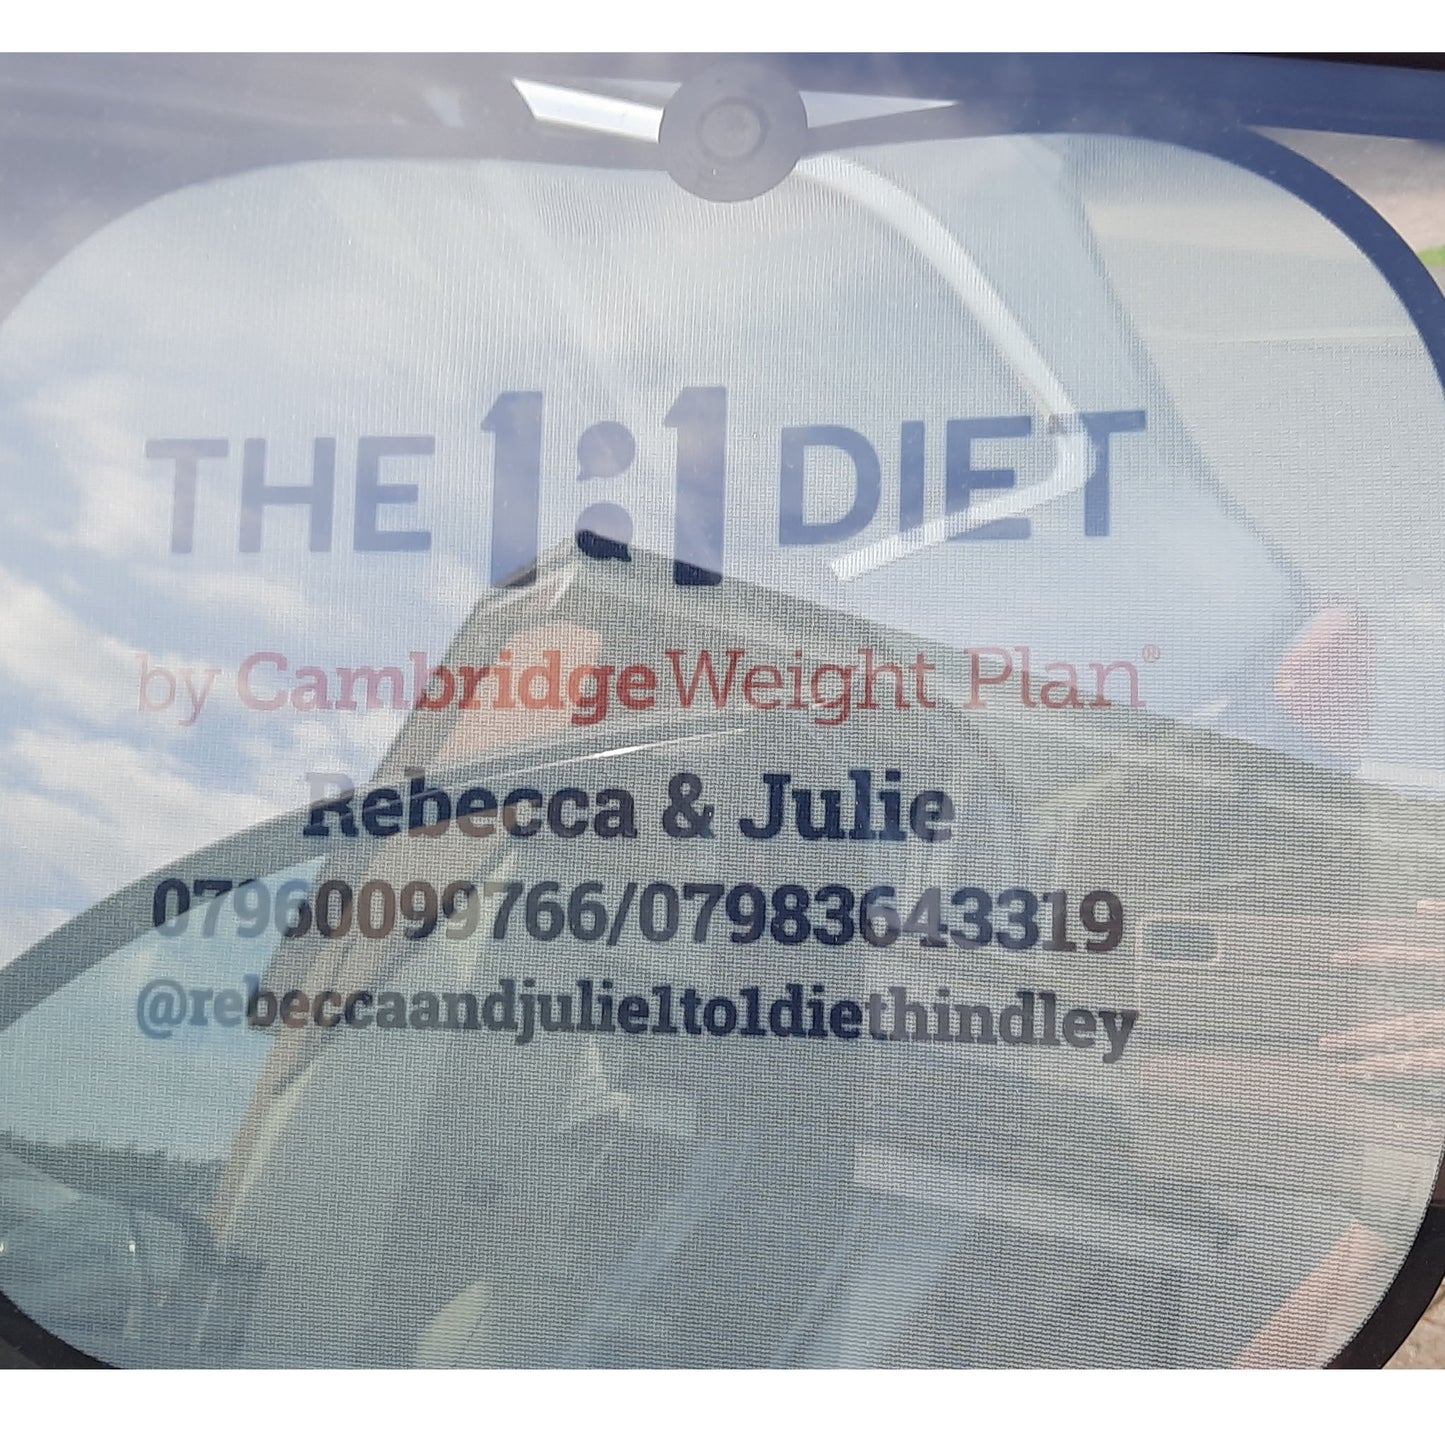 The 1:1 Diet - Car Window Hanger & Window Shades Set